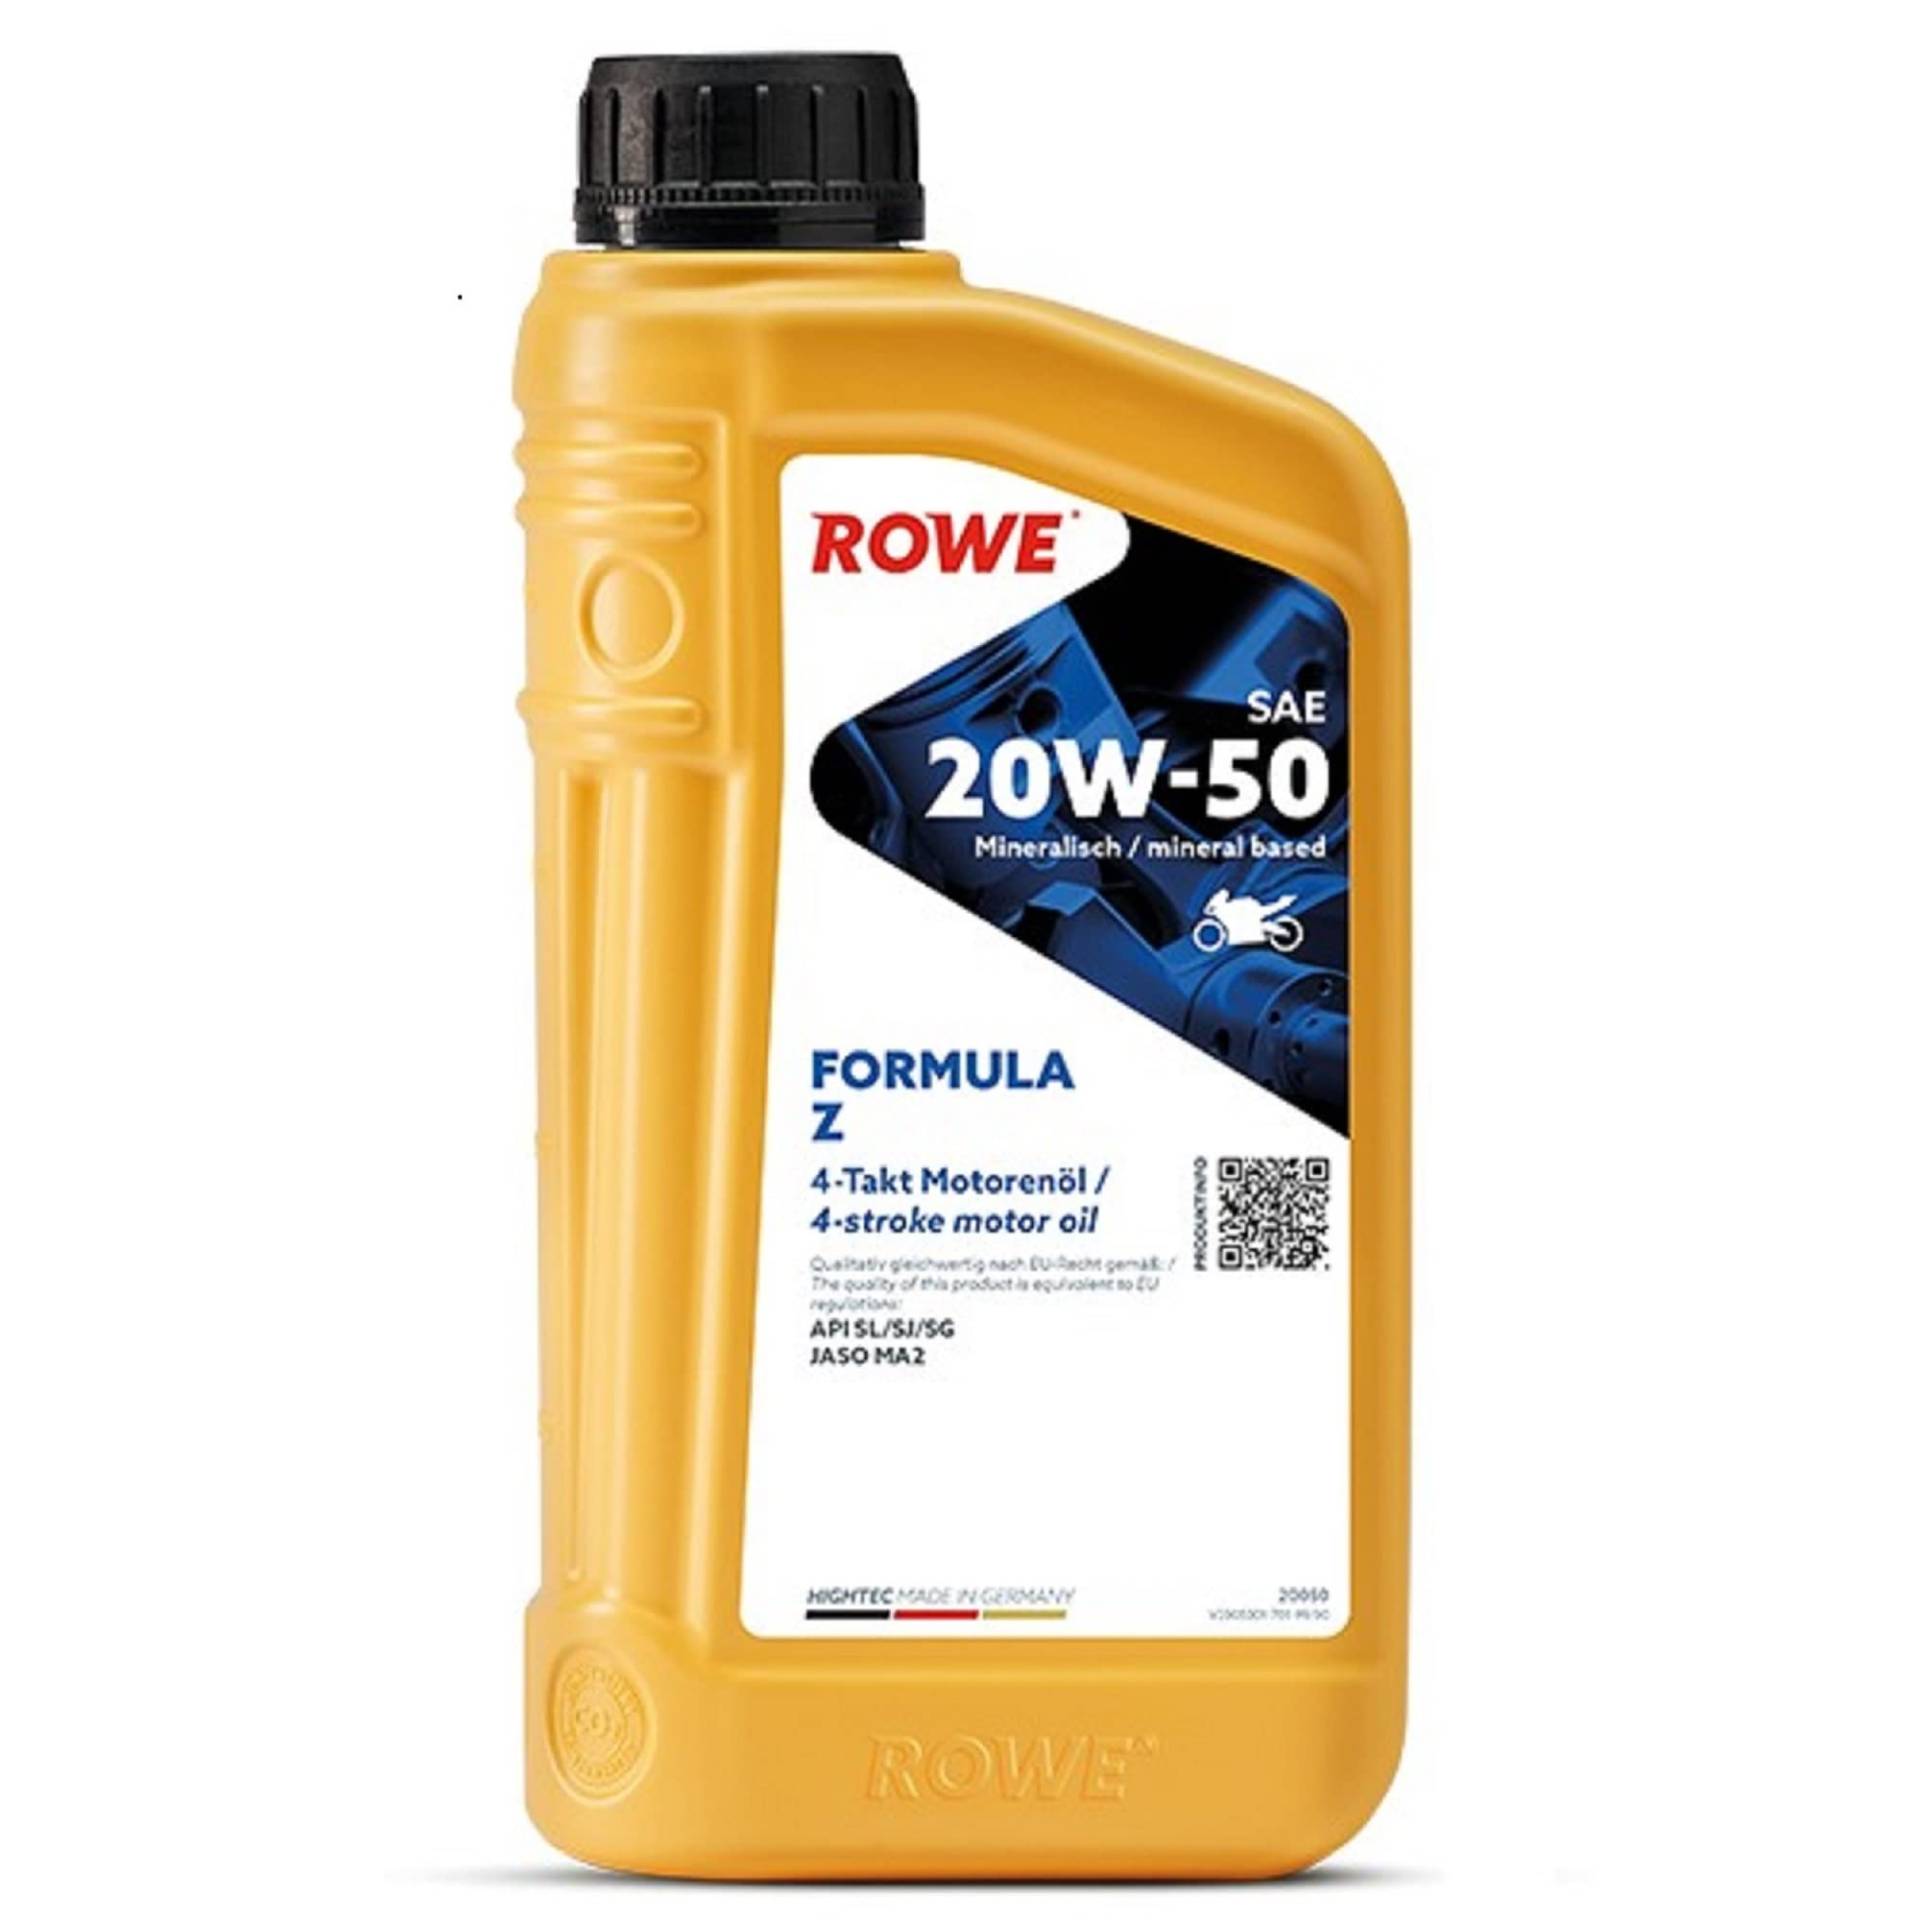 ROWE HIGHTEC FORMULA SAE 20W-50 Z, 1 Liter von ROWE